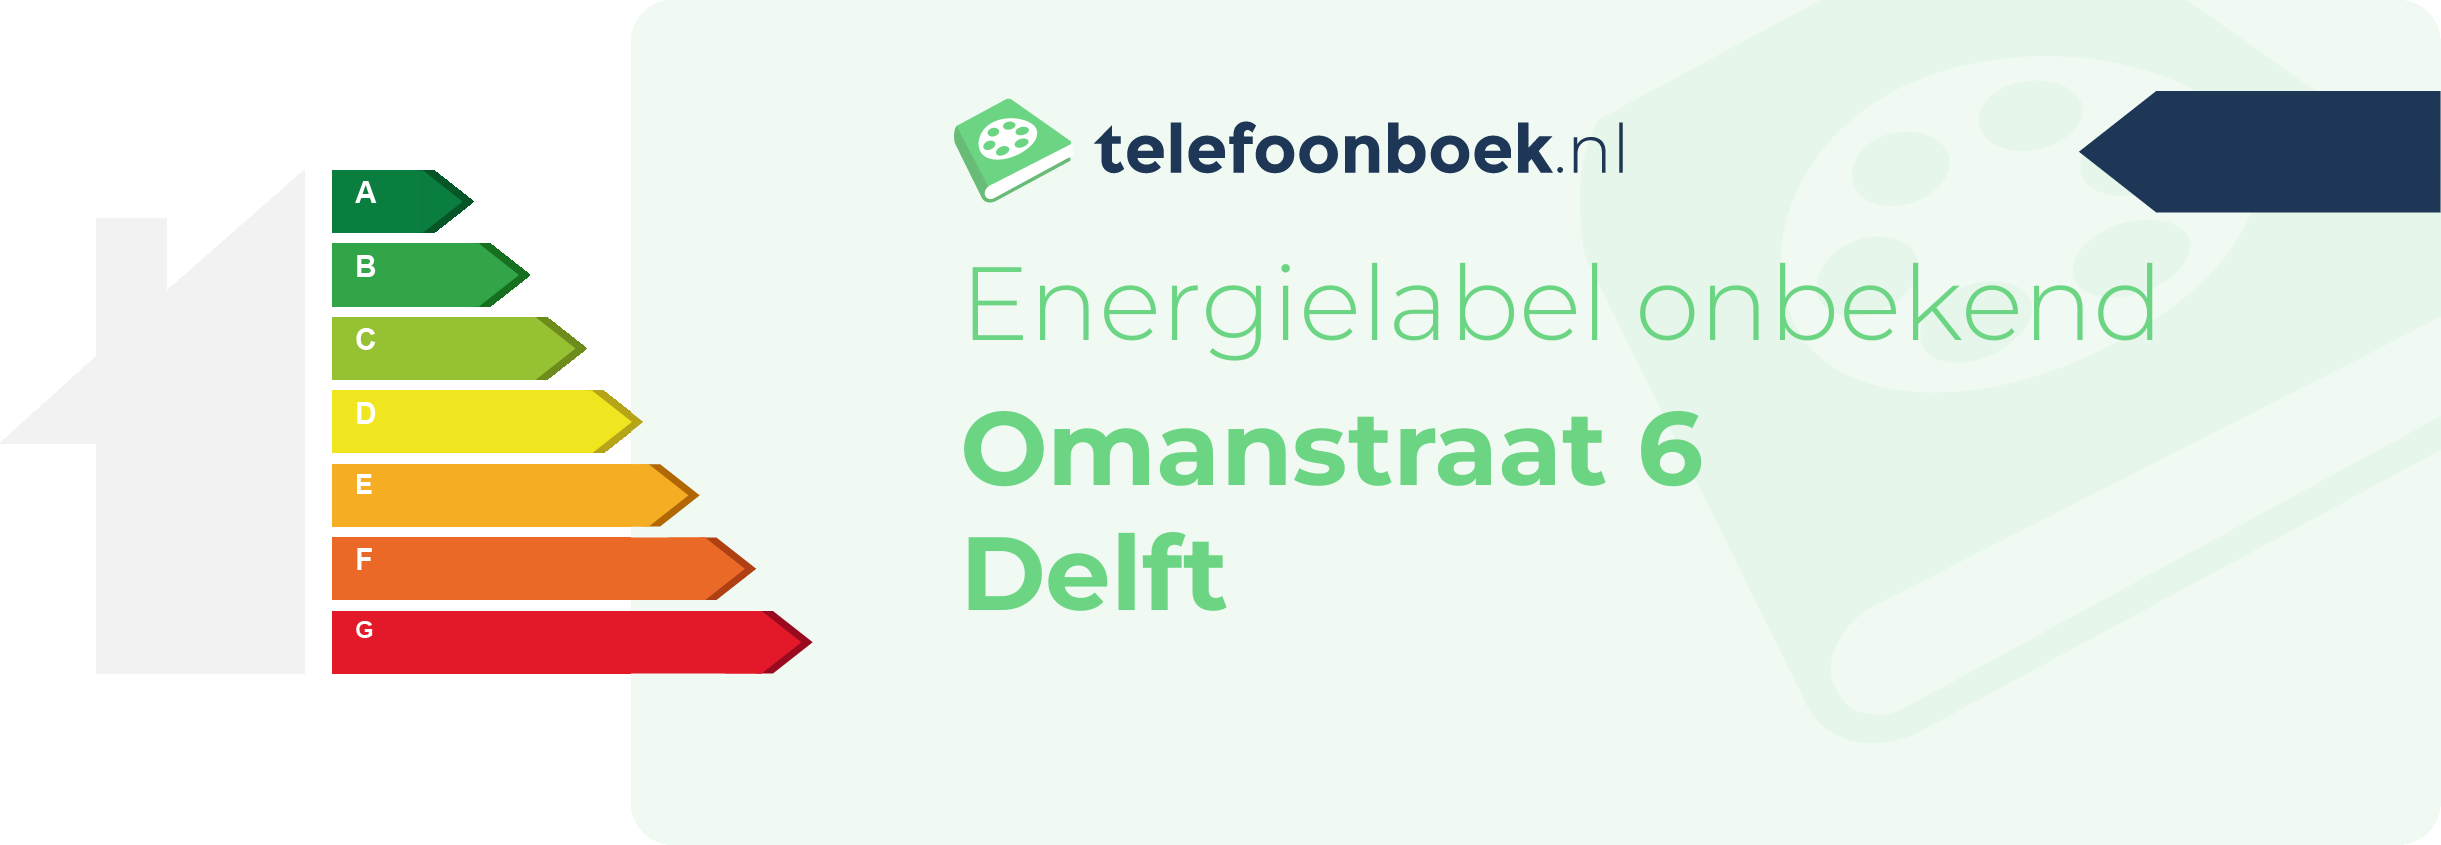 Energielabel Omanstraat 6 Delft